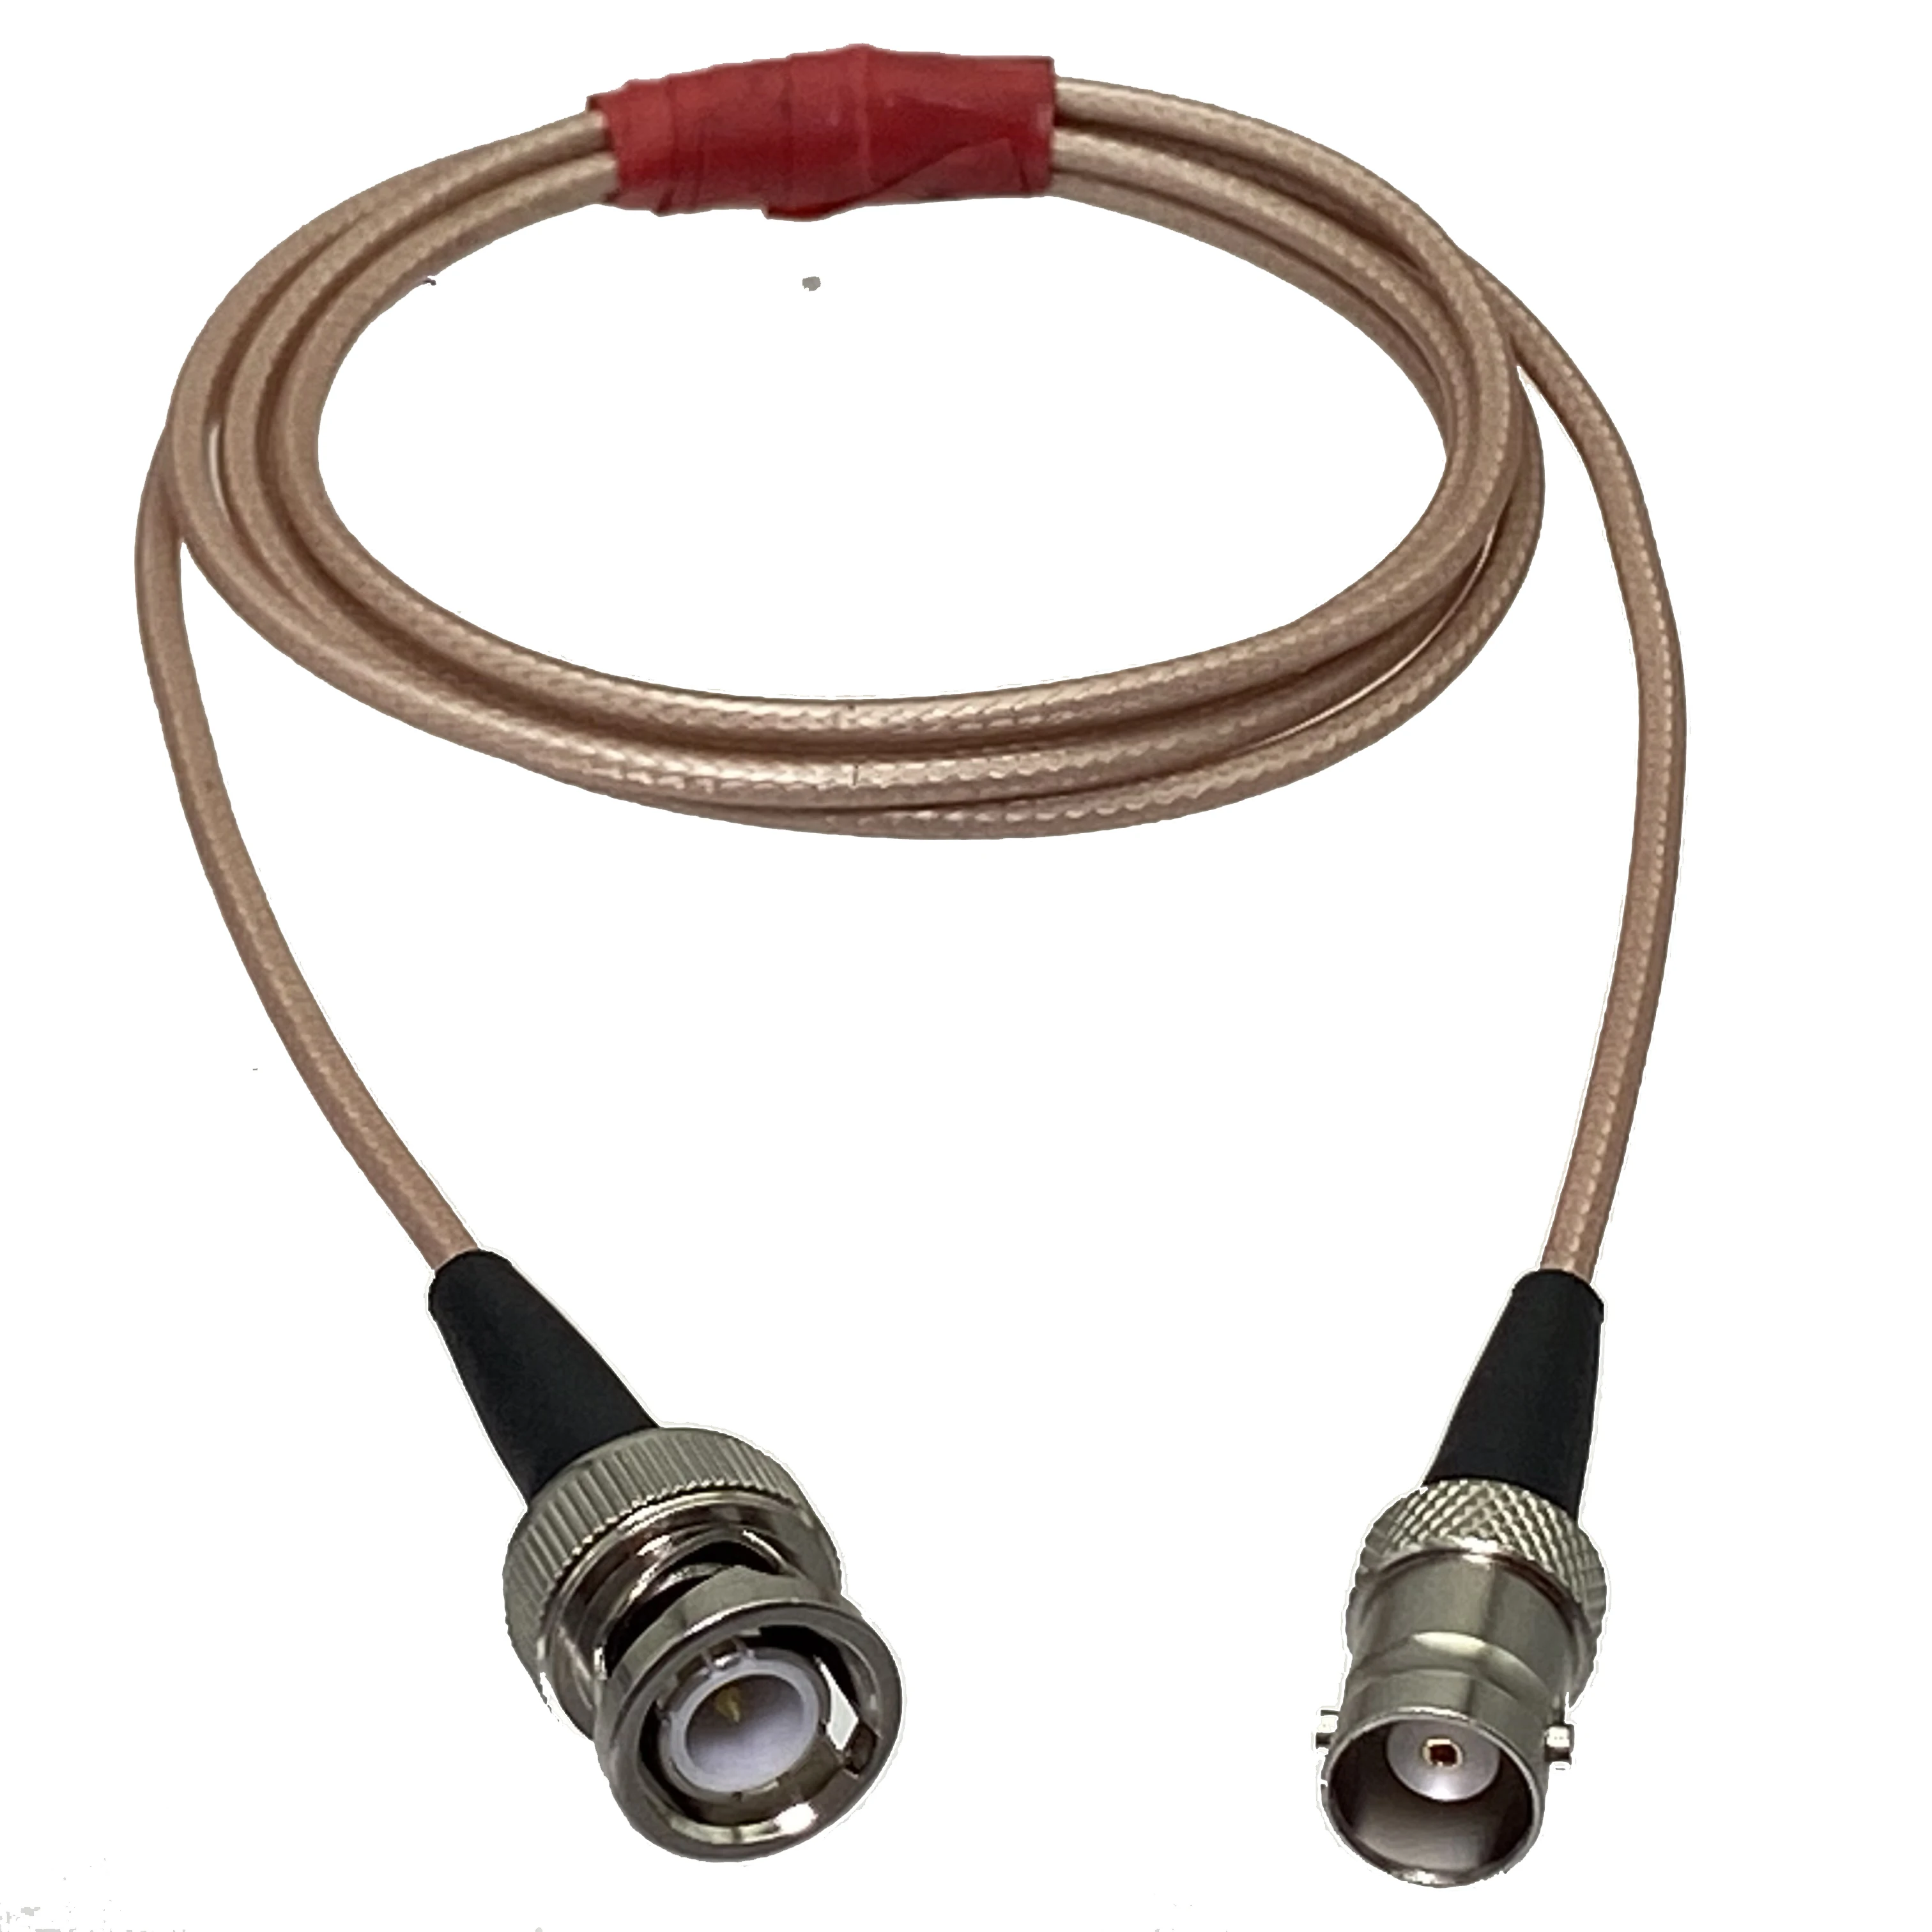 

RG316 кабель BNC Q9 штекер к BNC Q9 гнездовой разъем провода терминалы для ультразвукового оборудования дефектоскоп 3 фута ~ 10 м